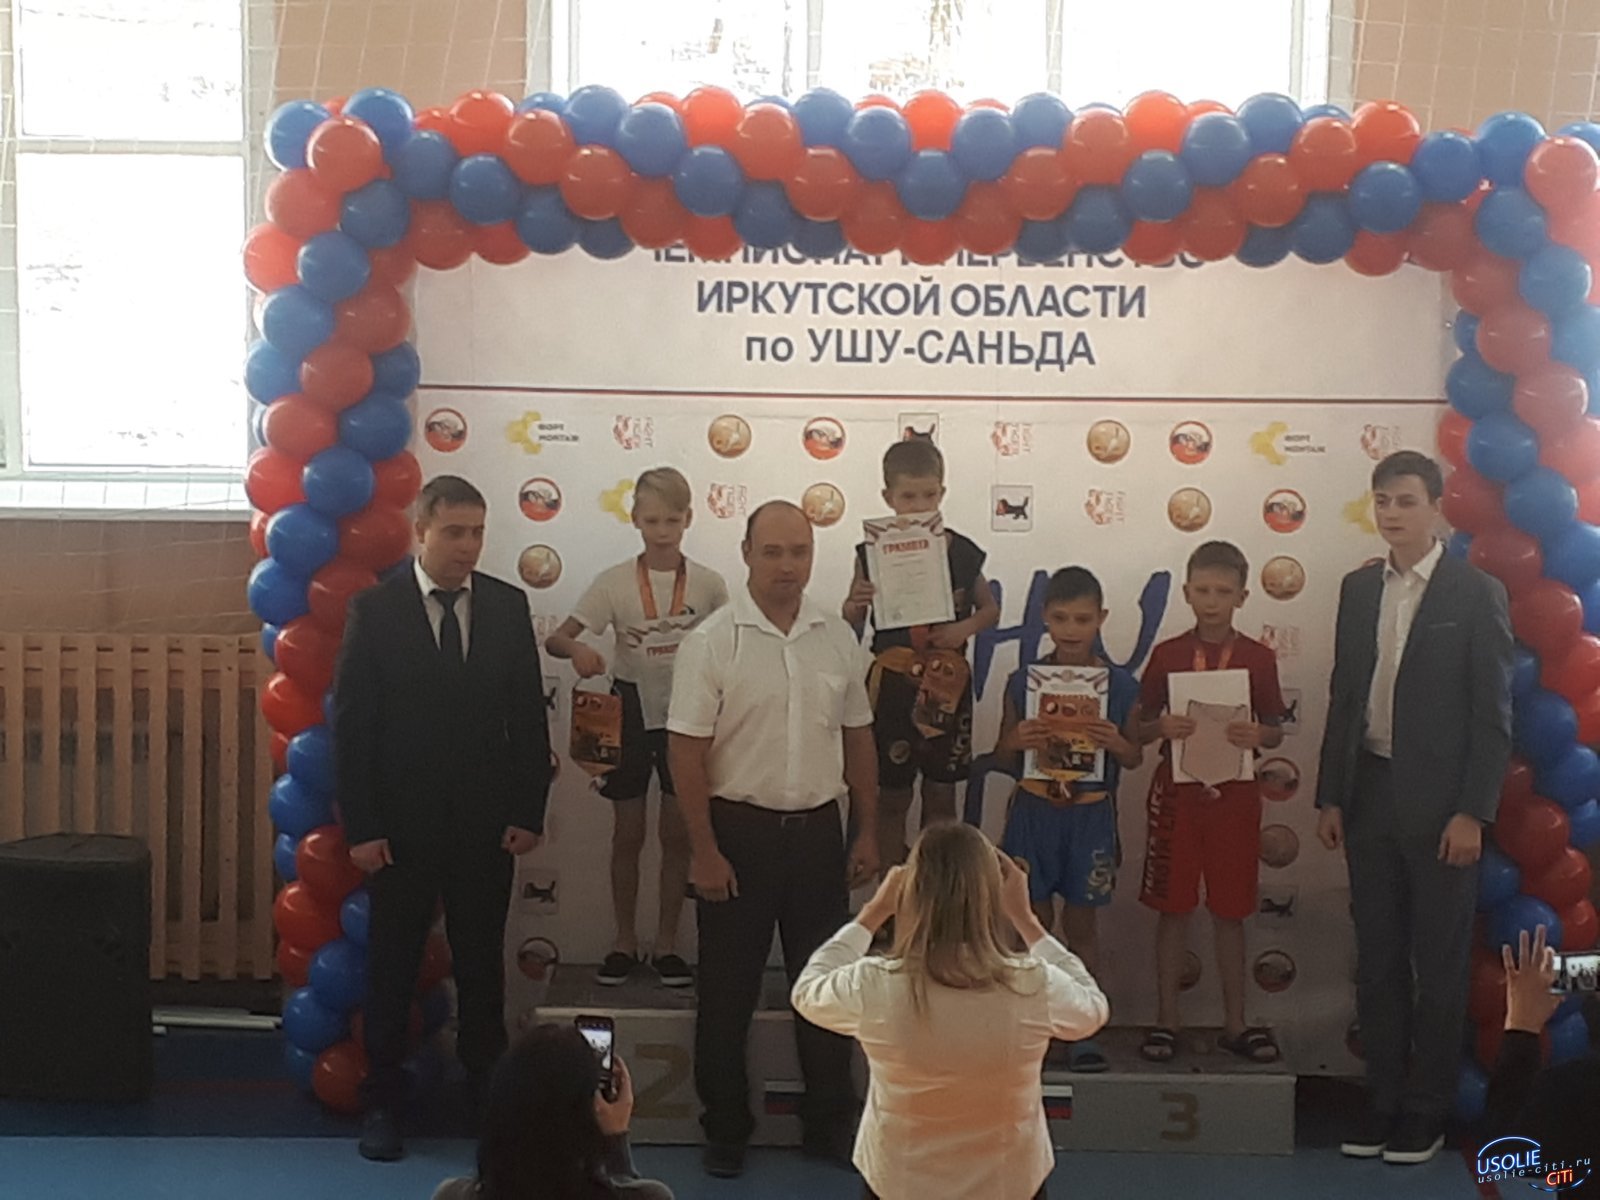 Чемпионом Иркутской области по ушу-саньда стал усольчанин Матвей Сарапулов